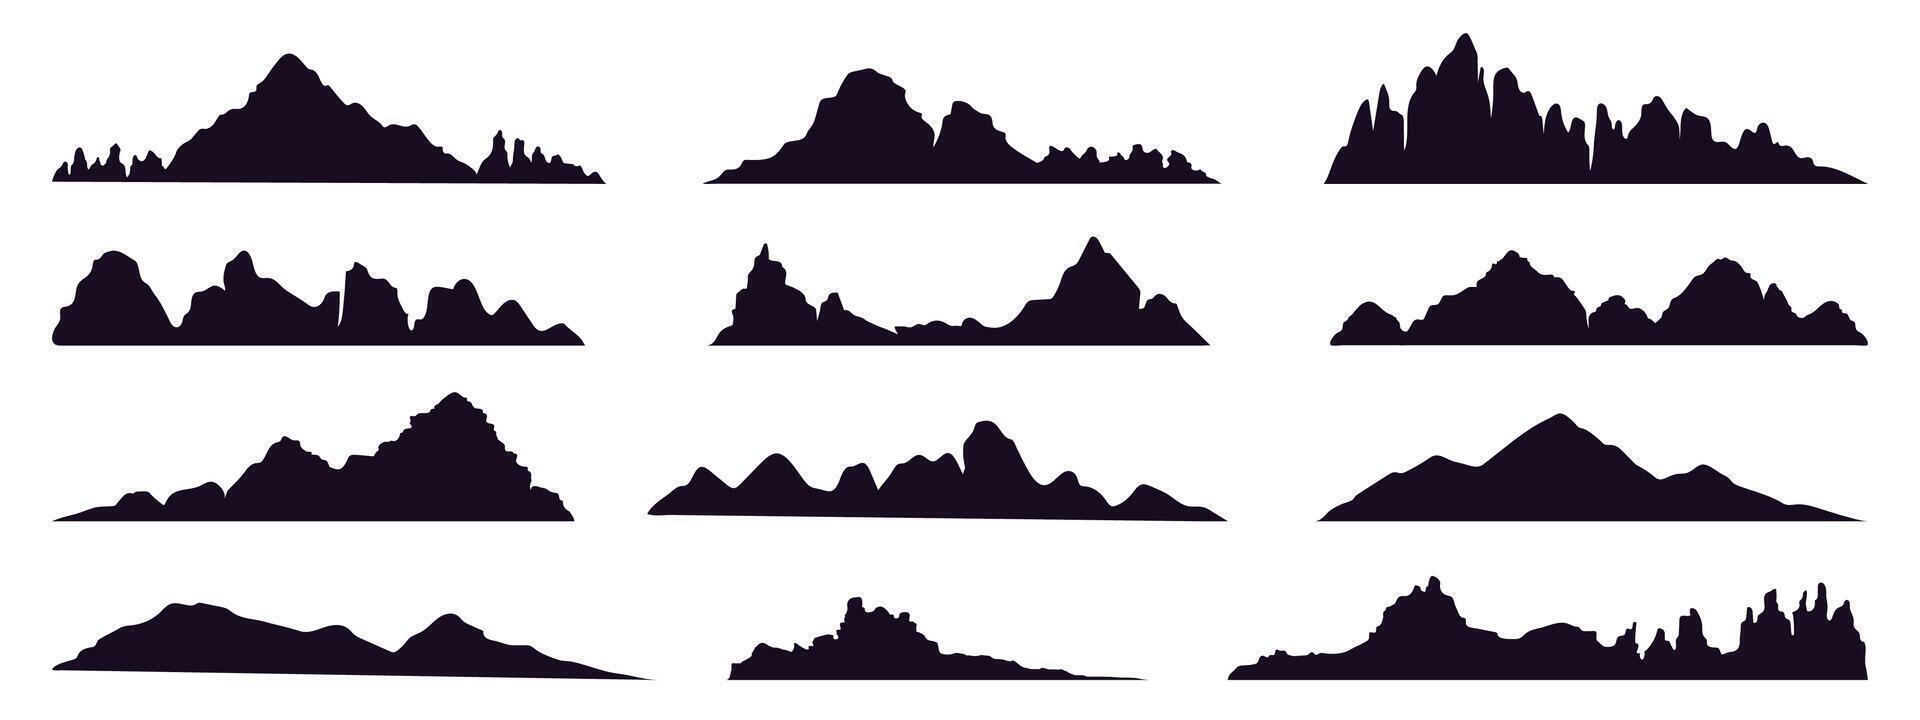 montagne silhouette. montagna picco, colline cime, berg e montagna valle silhouette, Tibet o Alpi montagne schizzo vettore illustrazione impostato